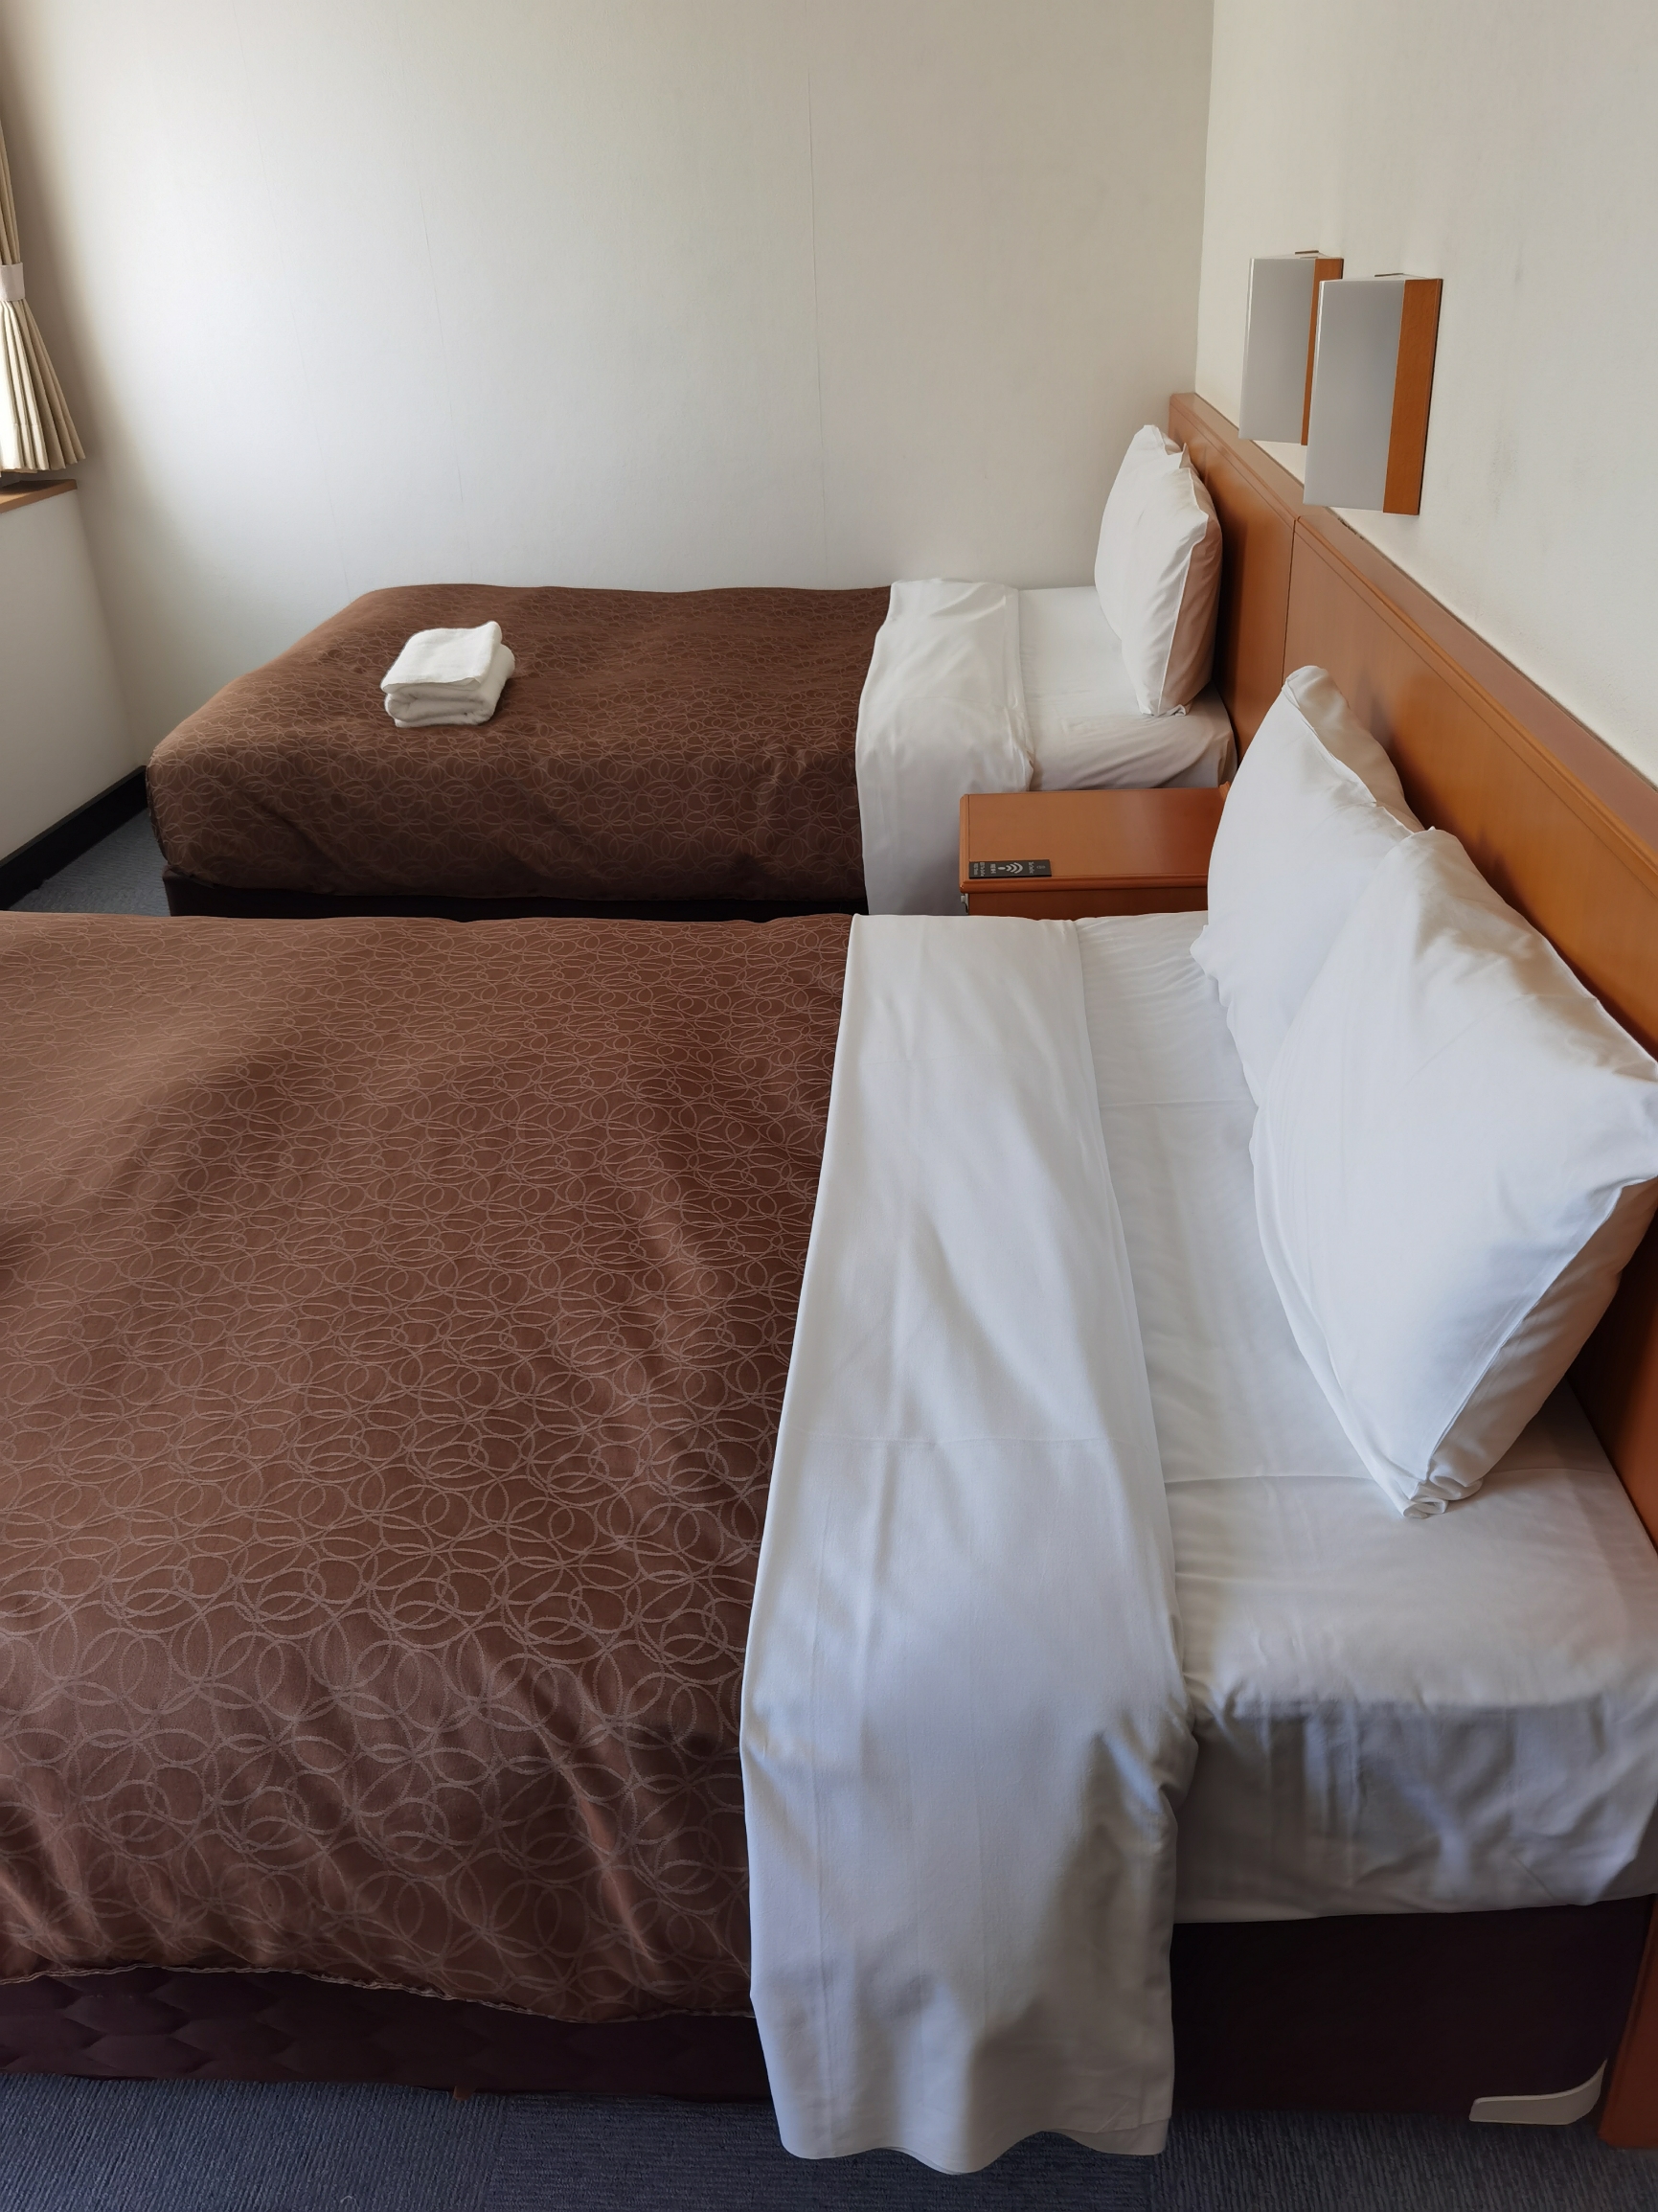 日本的酒店虽然房间不大，但都比较干净整洁。这酒店的地理位置和价格都不错，性价比在樱花季来说算是比较高